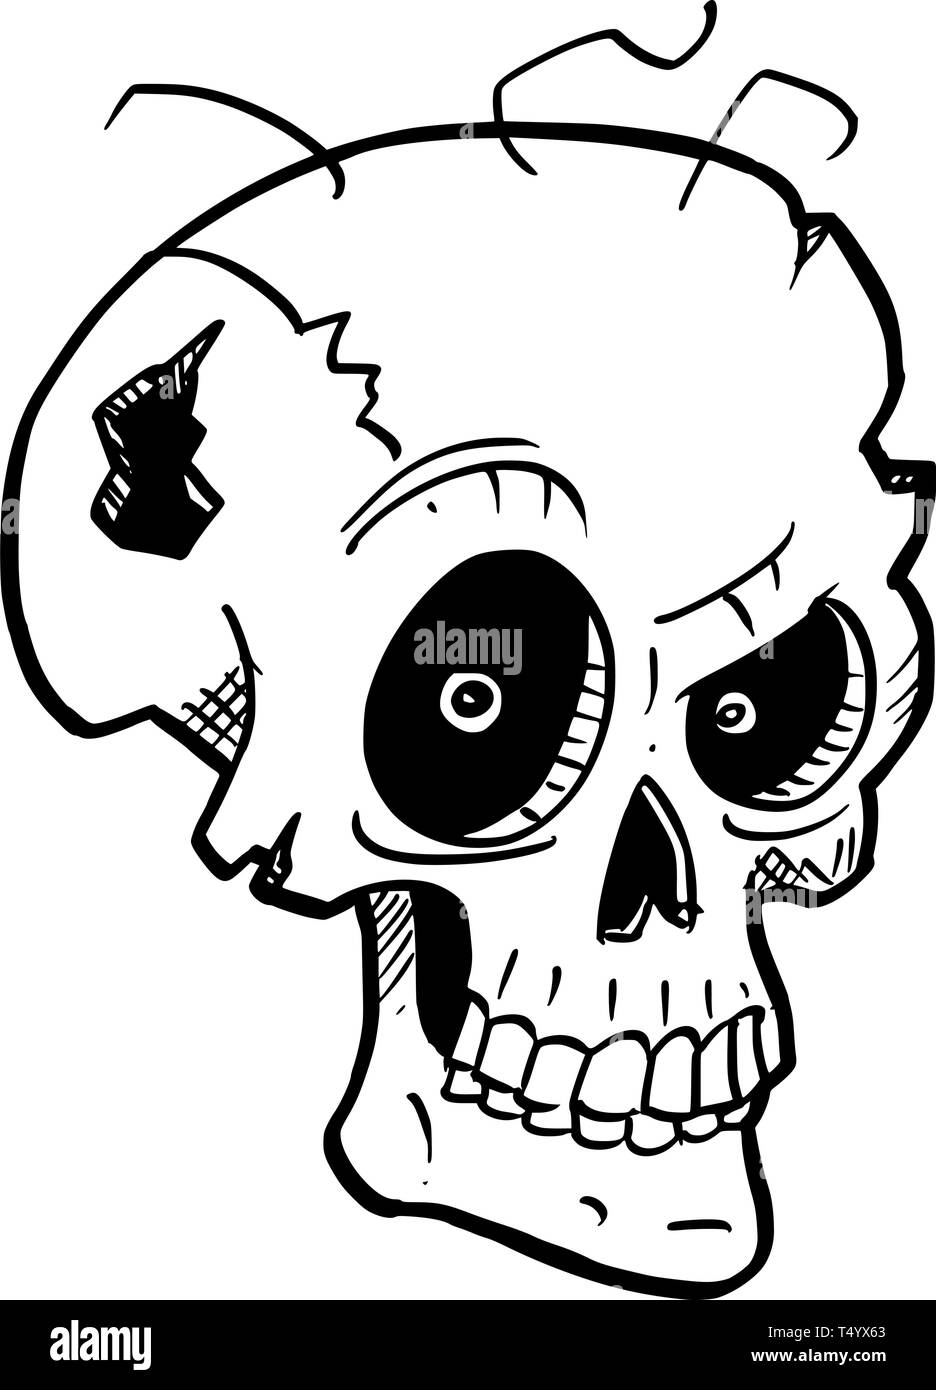 Cartoon Zeichnung konzeptuelle Abbildung: verrückte Monster Schädel mit bösen Augen. Stock Vektor